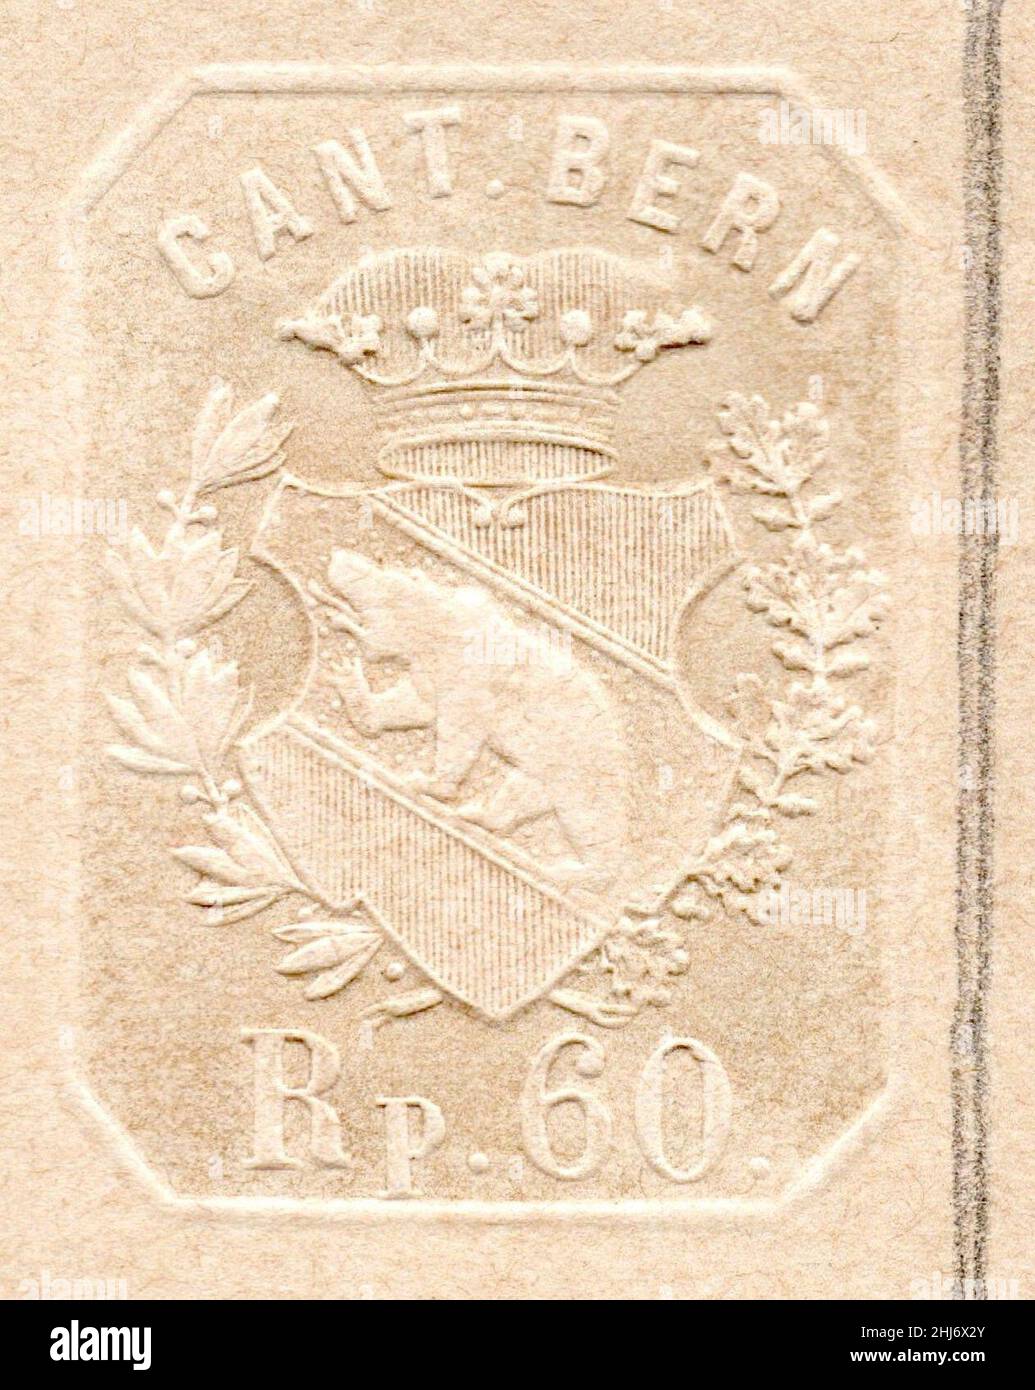 Switzerland Bern 1896 relief (dry) print 60 Rappen. Stock Photo